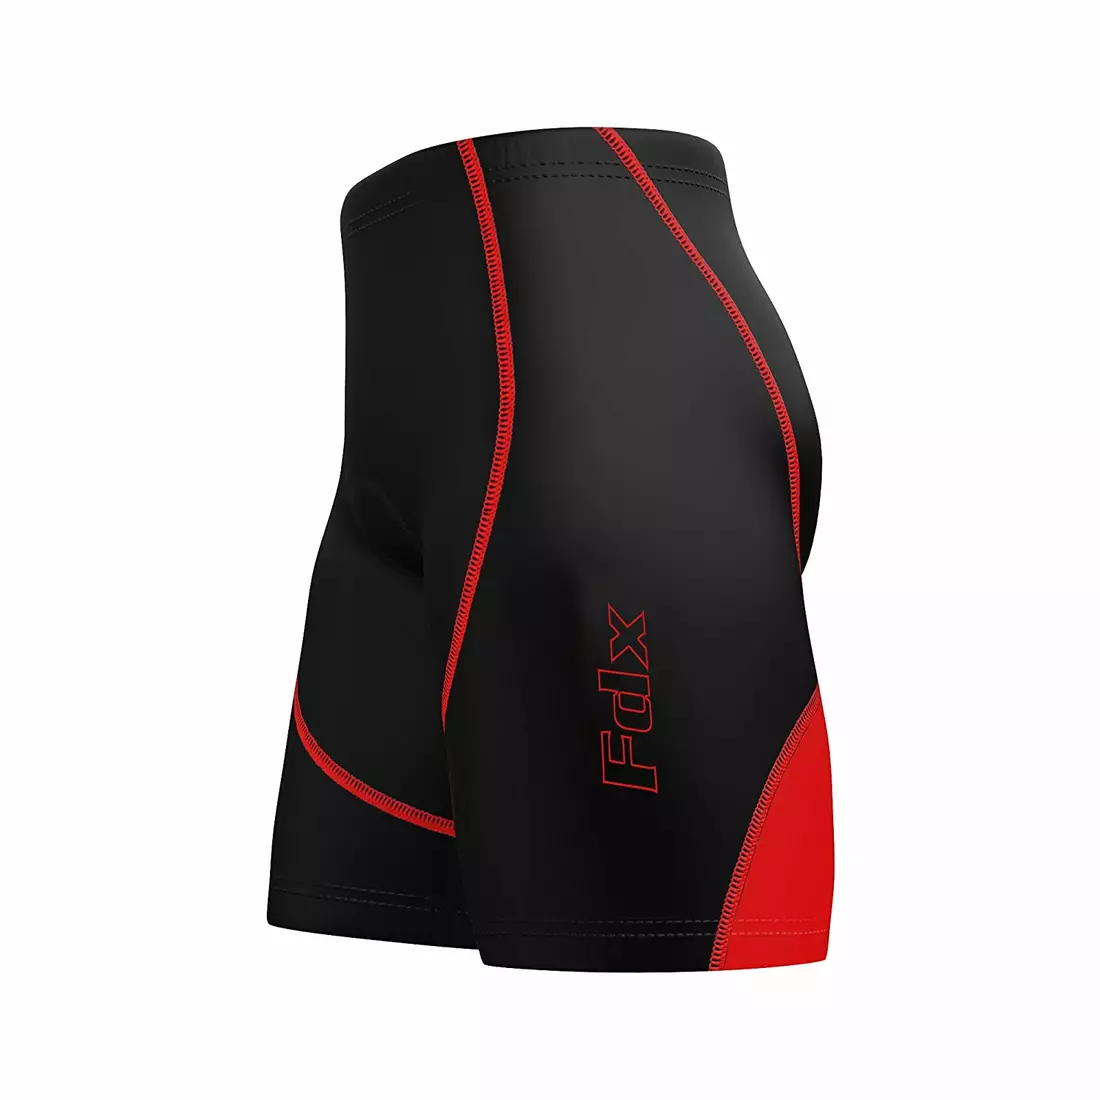 Pantaloni scurți de bicicletă FDX 1610 fără bretele, negru și roșu